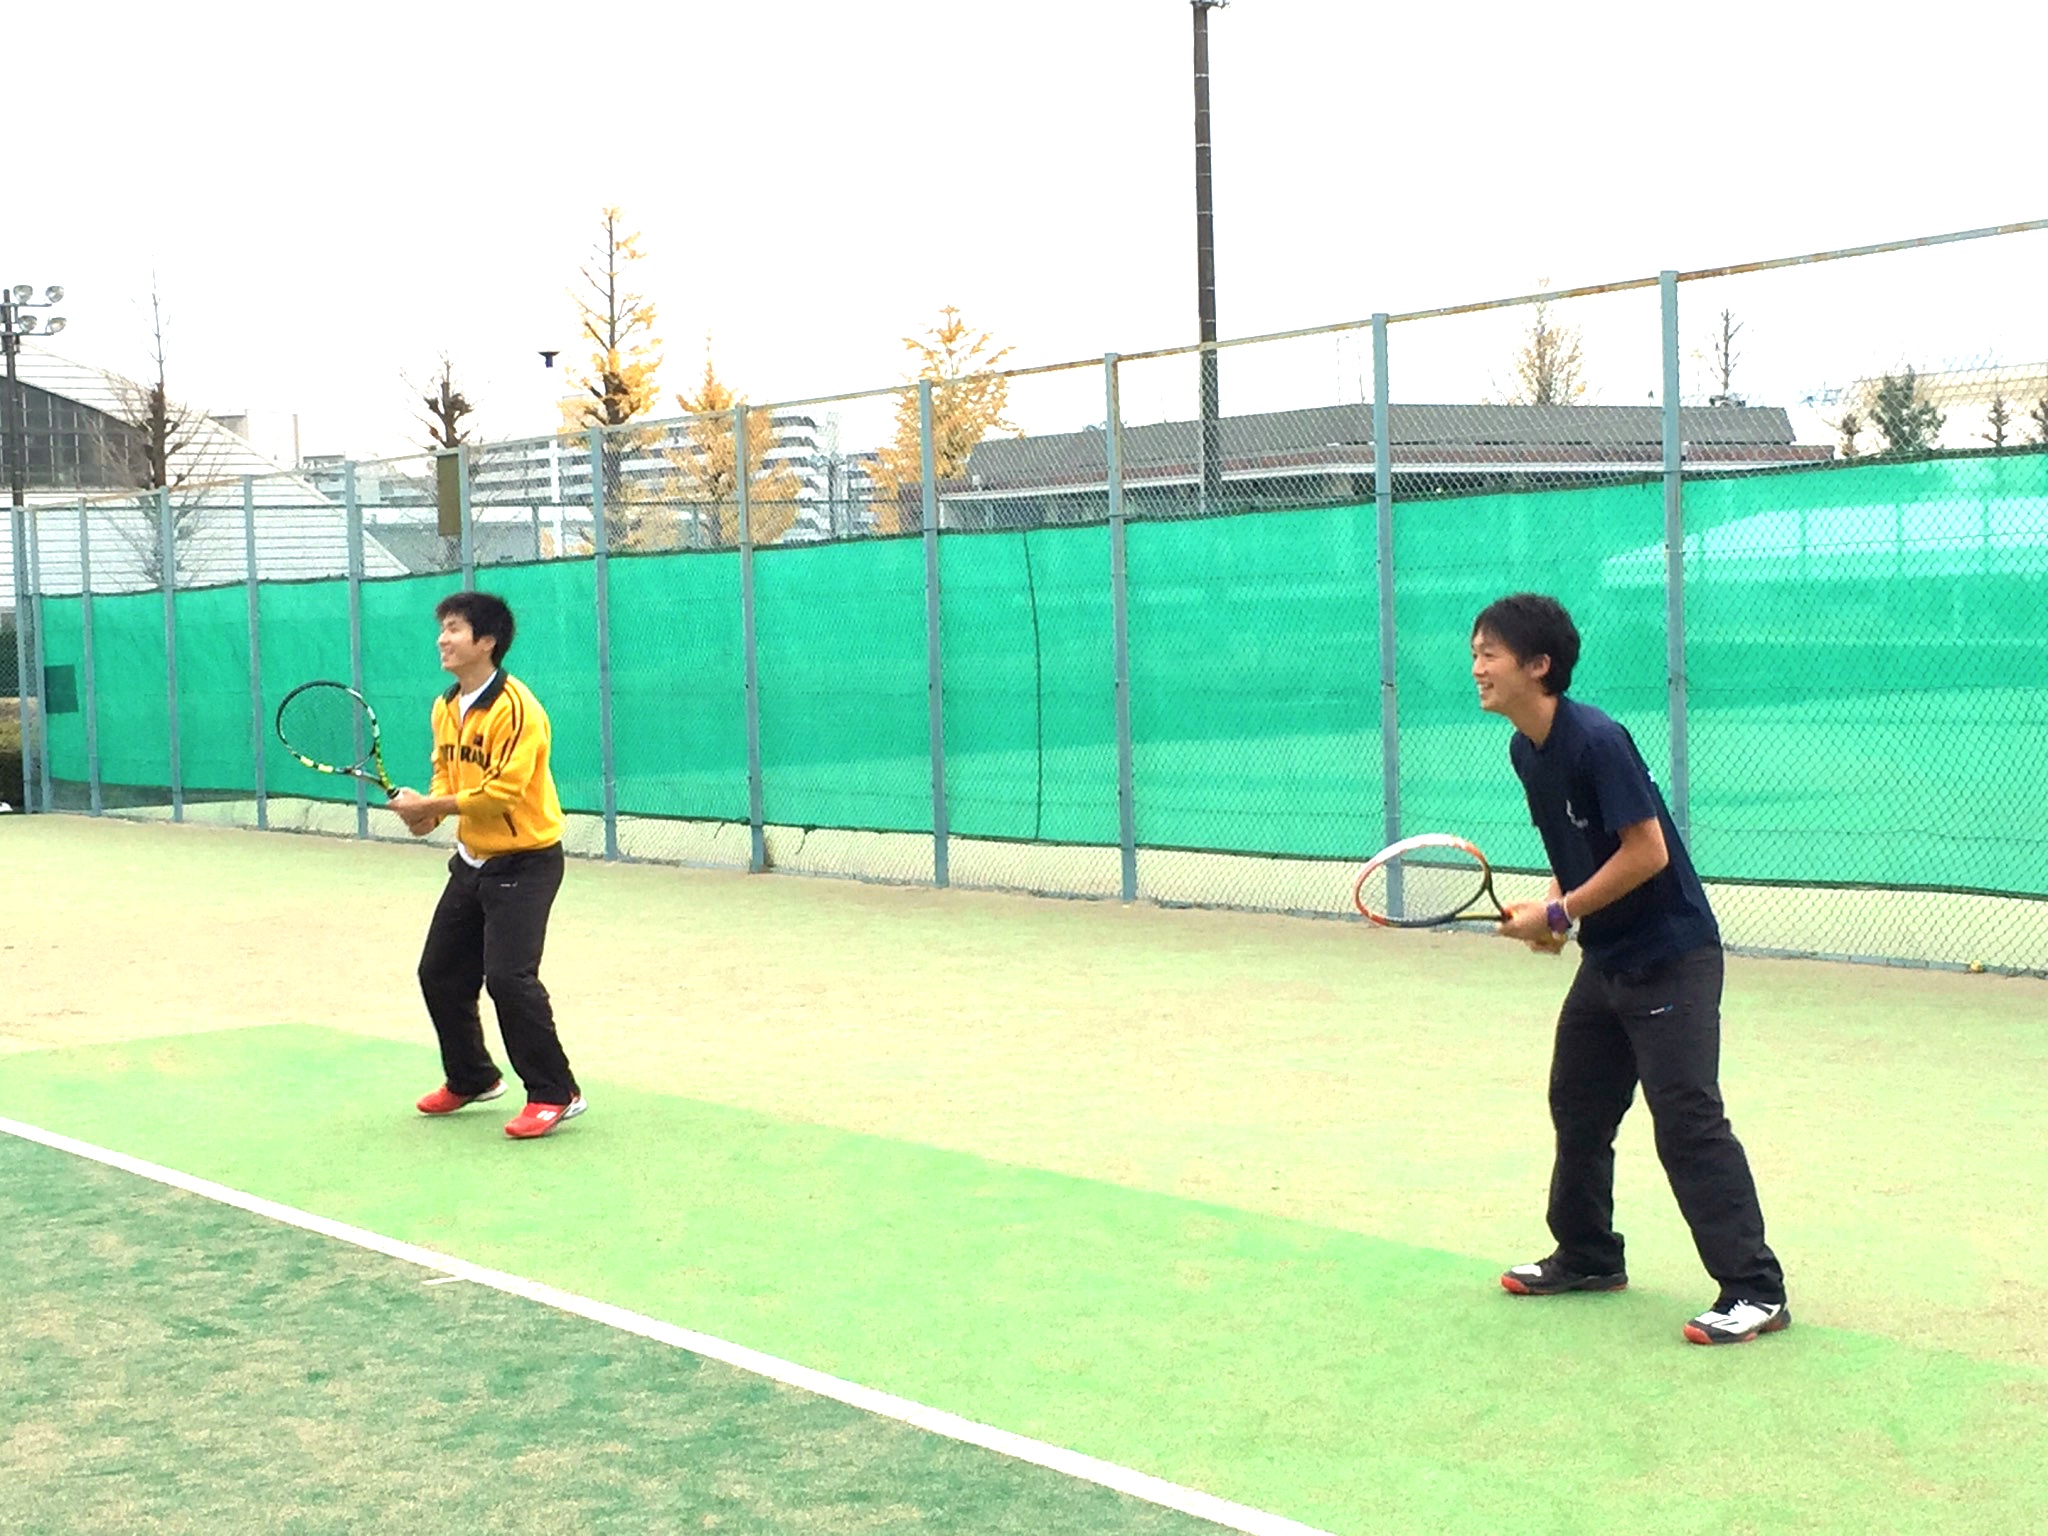 ボレスト | ブログ | 昭和の森テニススクール | テニススクール | 関東・関西を中心にテニス関連事業を展開する会社テニスユニバース